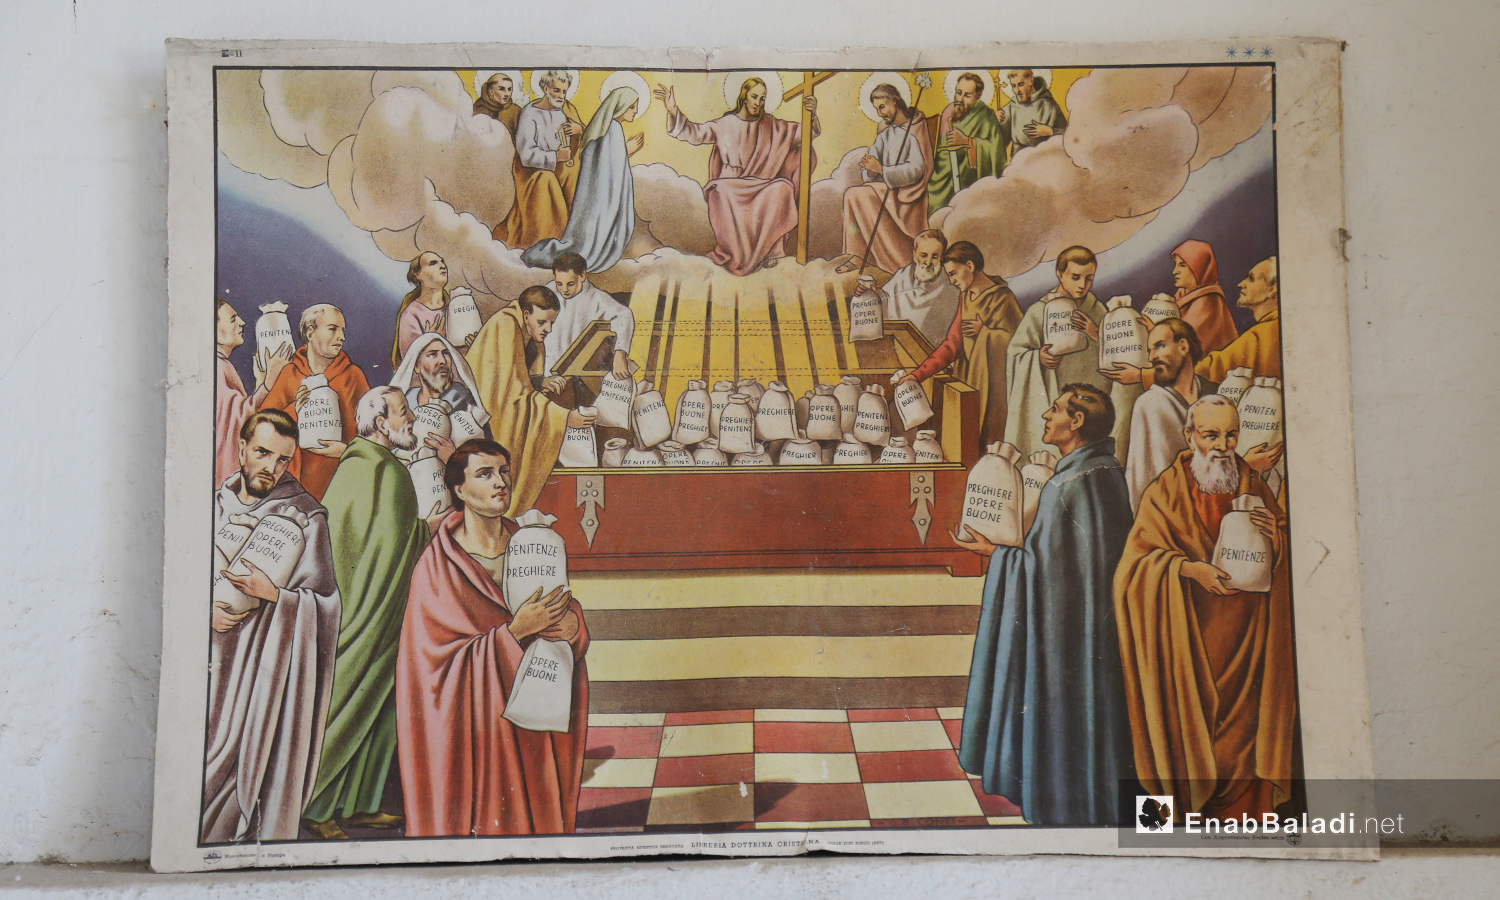 لوحة في كنيسة الروم الأرثذوكس بجسر الشغور تعرض المسيح وهو يوزع المغفرة على رعاياه - تموز 2020 (عنب بلدي)